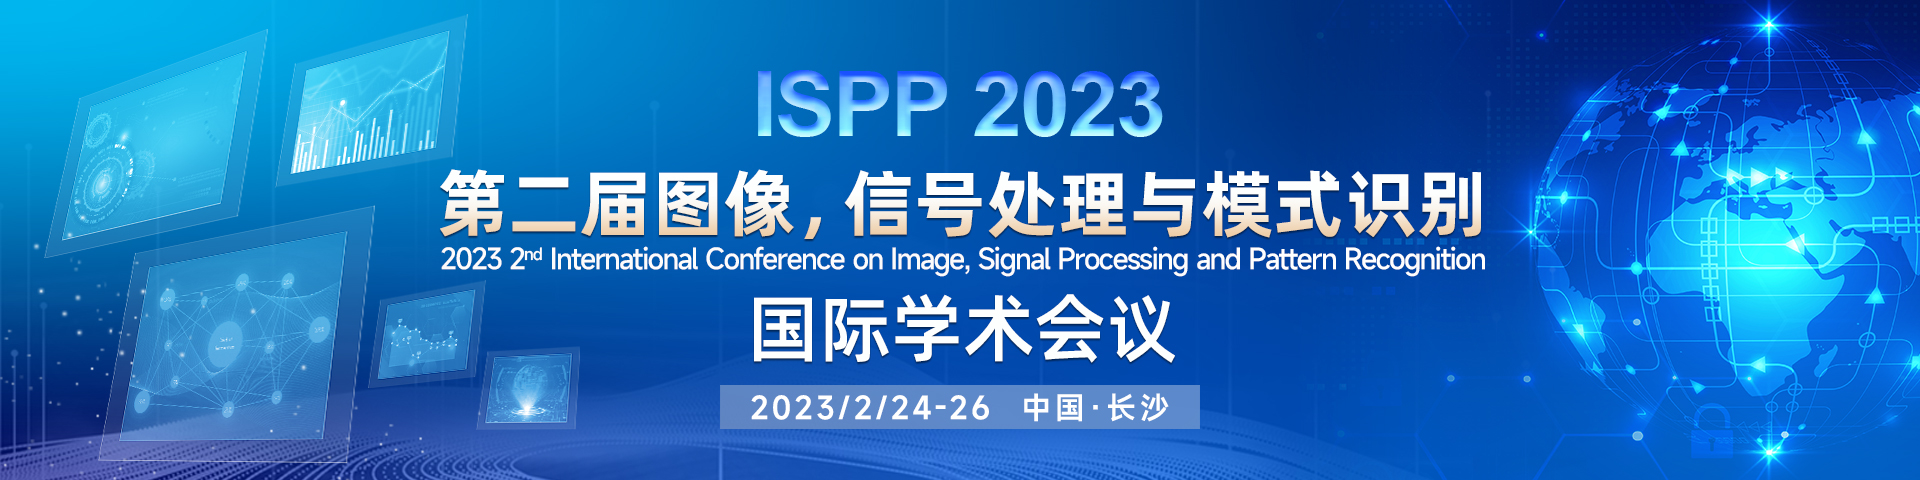 2023年2月-长沙-ISPP-会议官网轮播图.jpg